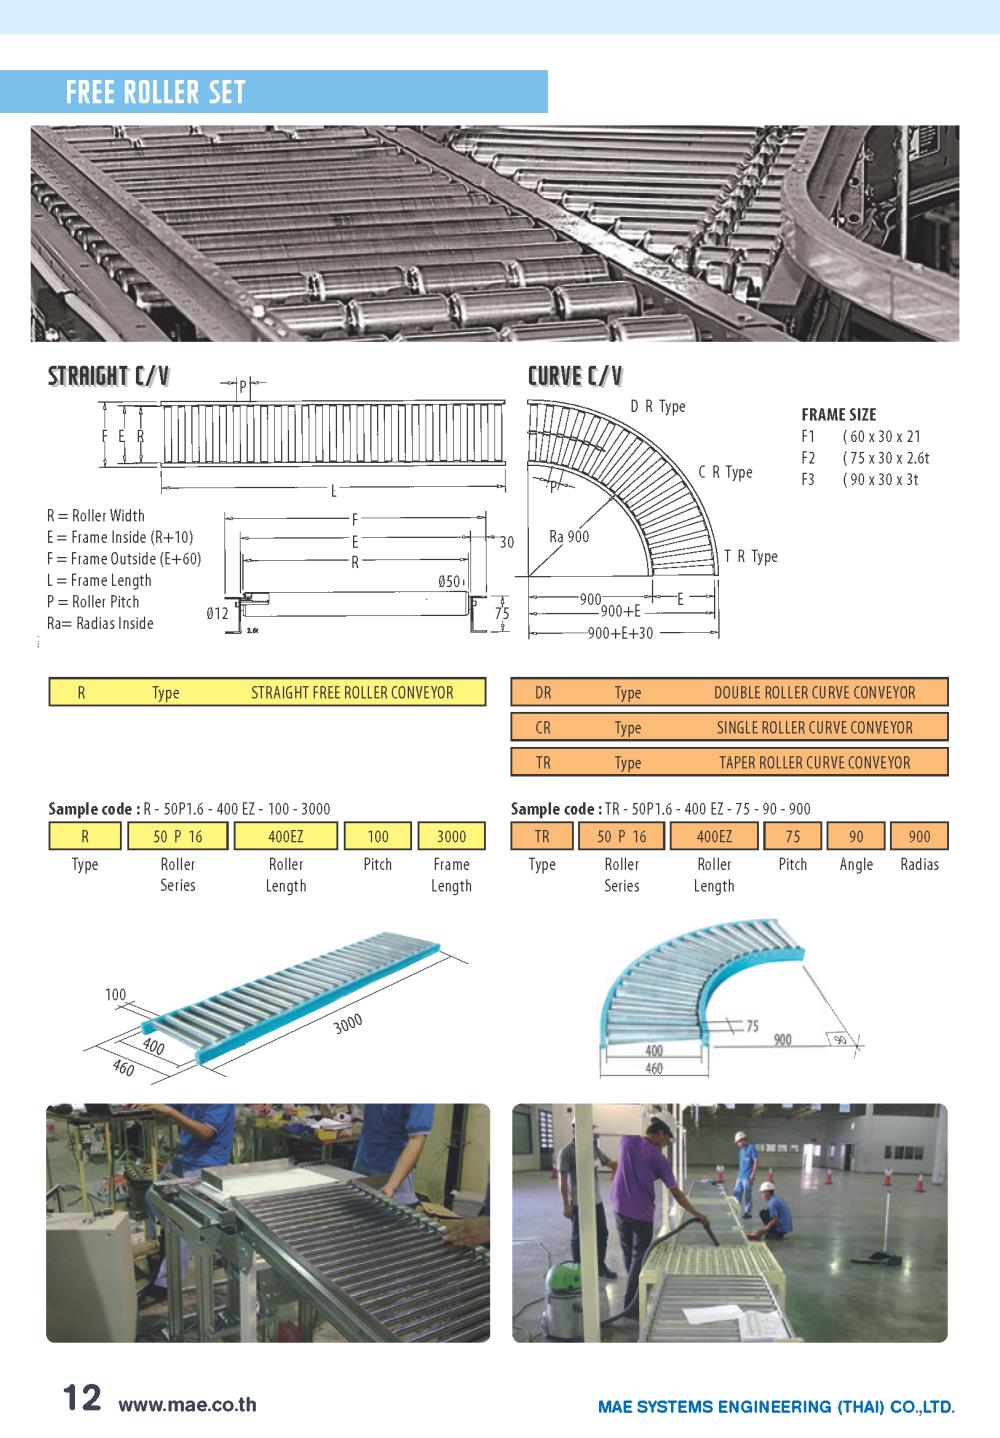 Free Roller Set,Belt conveyor, Conveyor, สายพานลำเลียง, สายพาน PU, สายพาน PVC,MAE,Materials Handling/Conveyor Components/Conveyor Belts